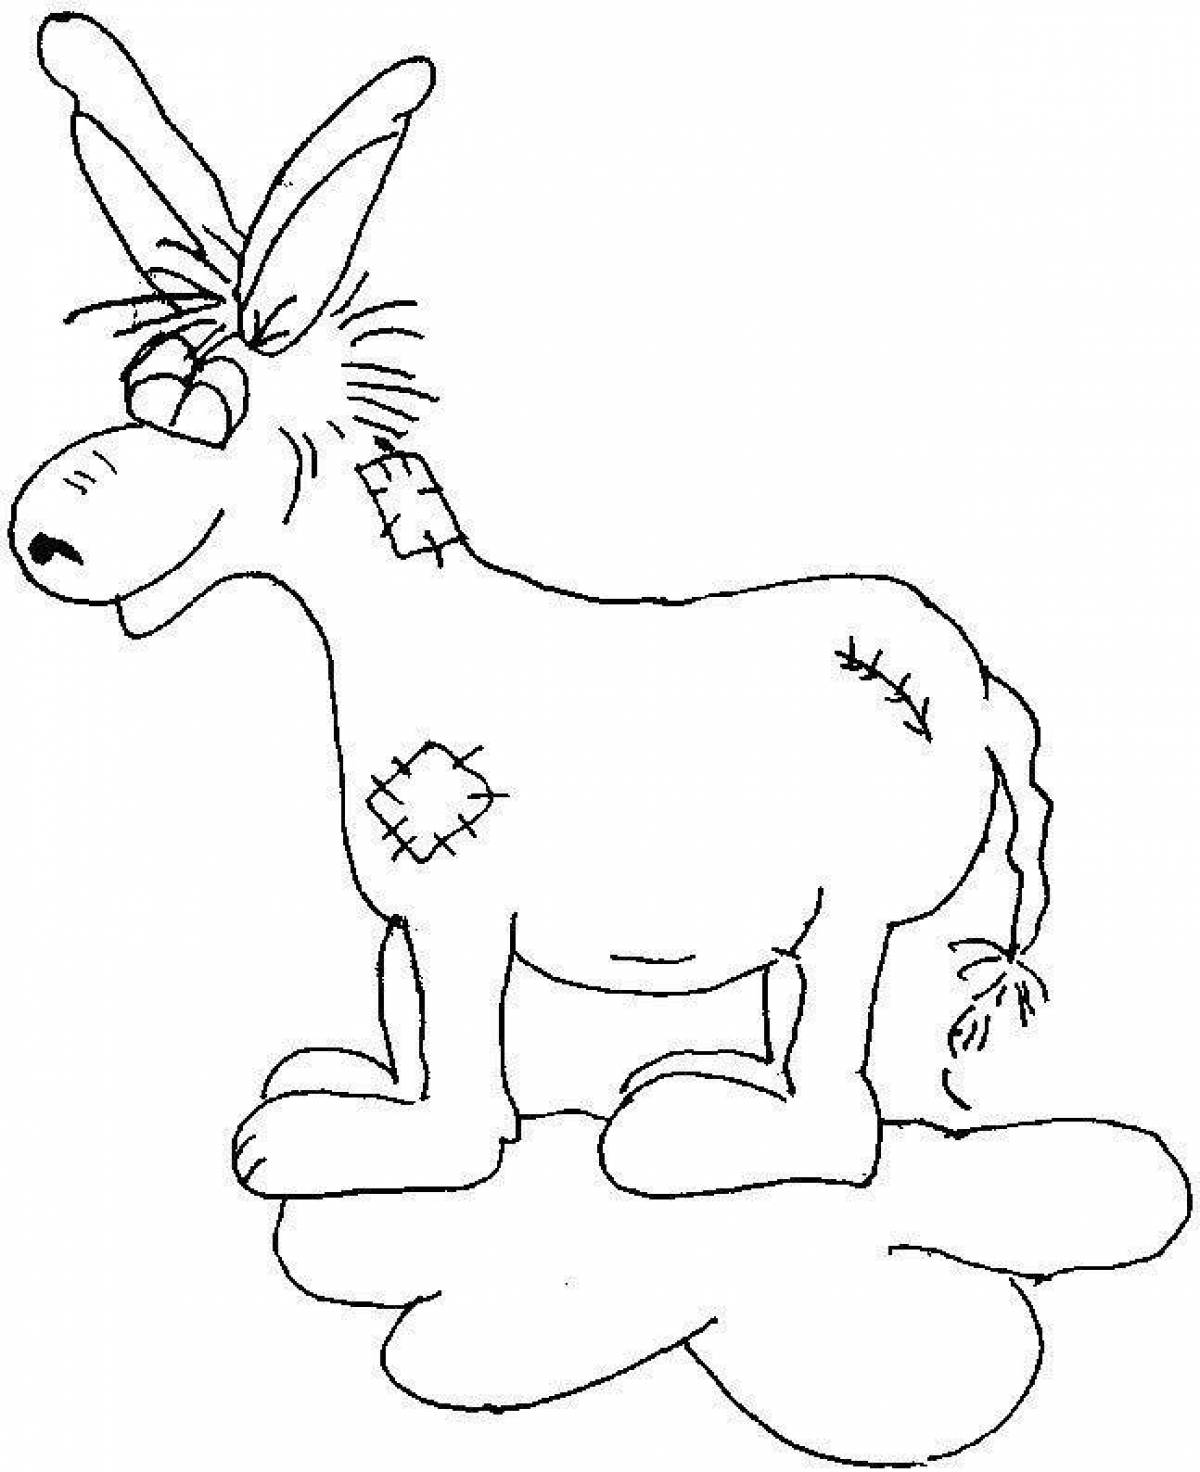 Fun coloring donkey